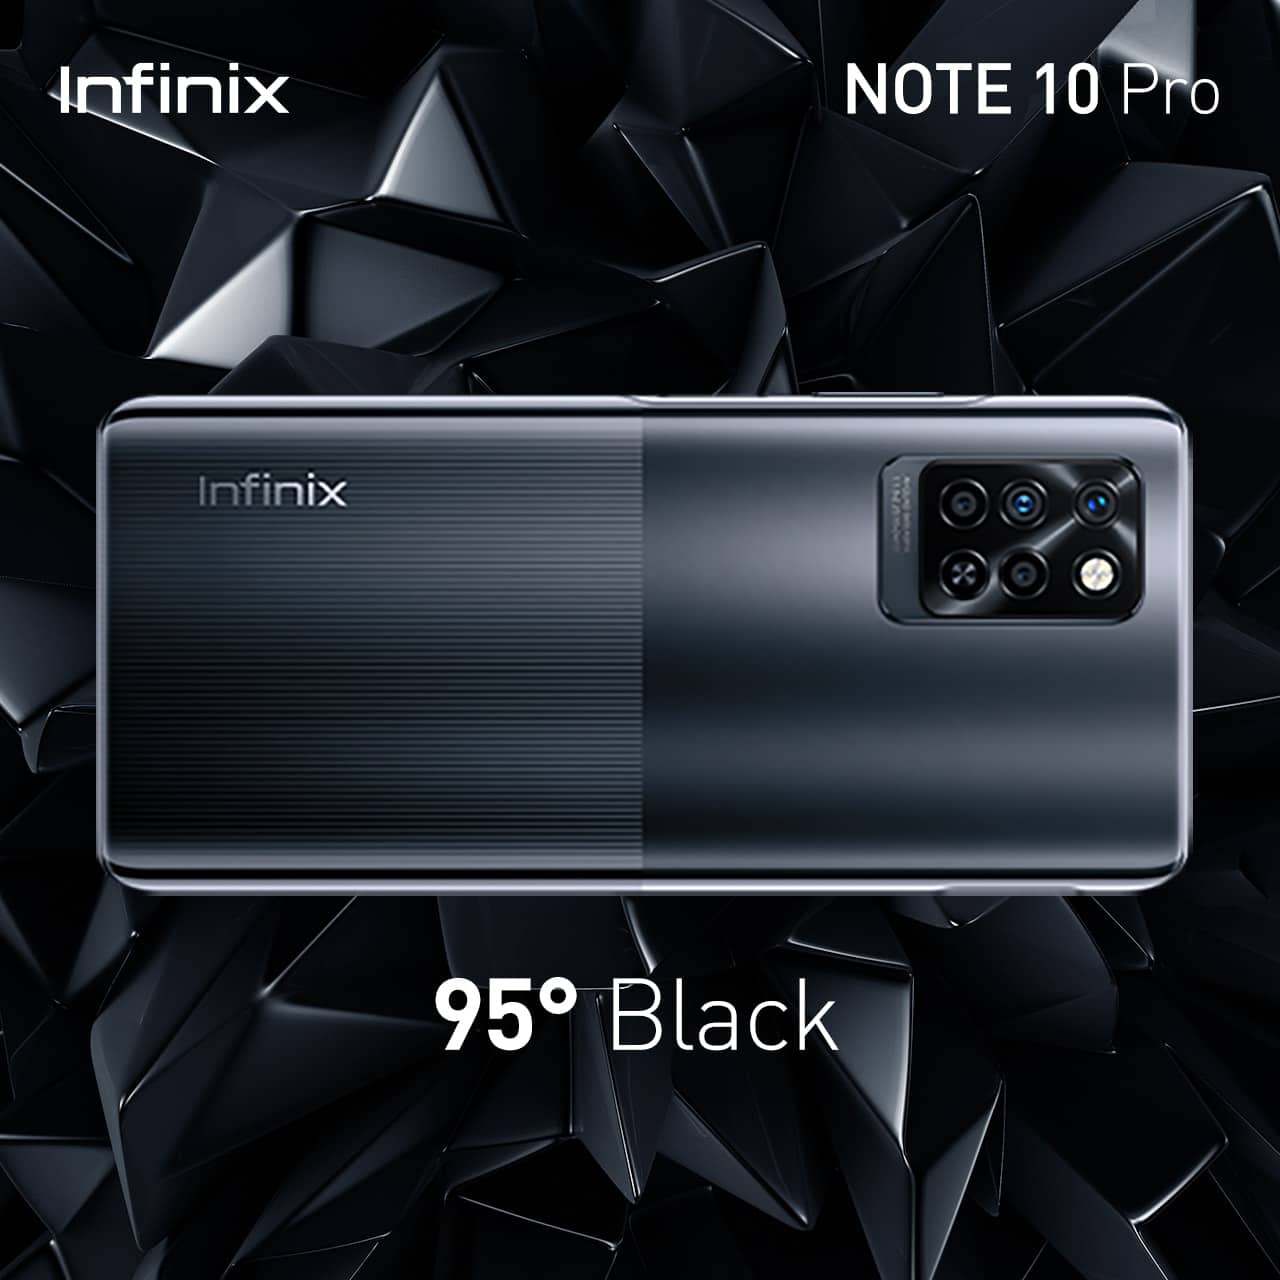 Infinix เปิดตัวเกมมิ่งสมาร์ตโฟน NOTE 10 Series ชิปเซ็ตทรงพลัง Helio G90T จอใหญ่เต็มตา 6.95 นิ้ว เริ่มขาย 5 สิงหาคมนี้ 7